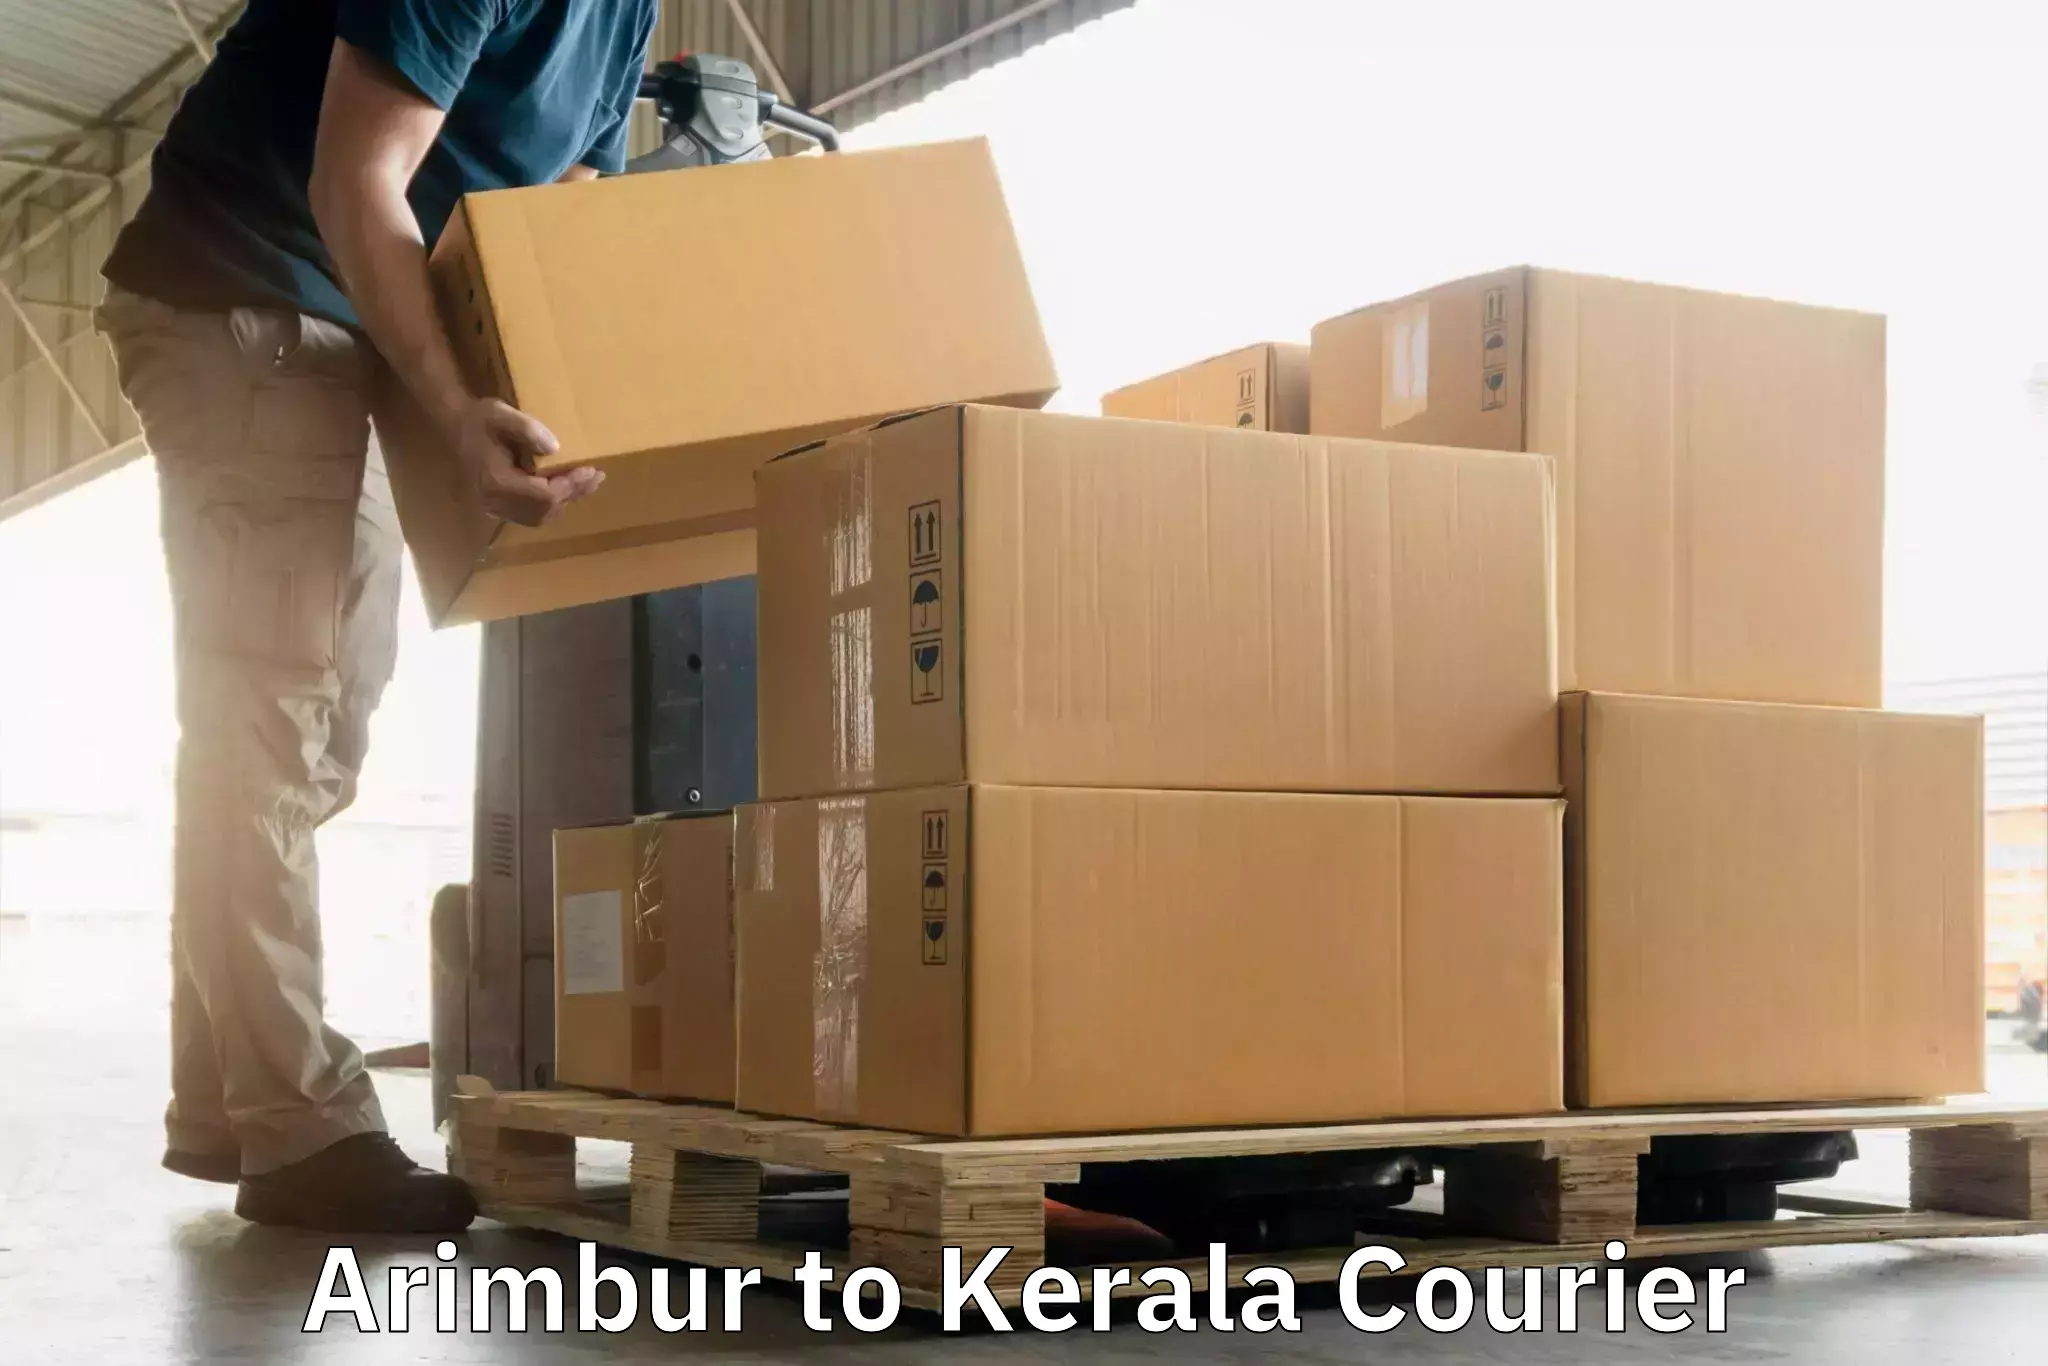 Urgent courier needs Arimbur to Kerala